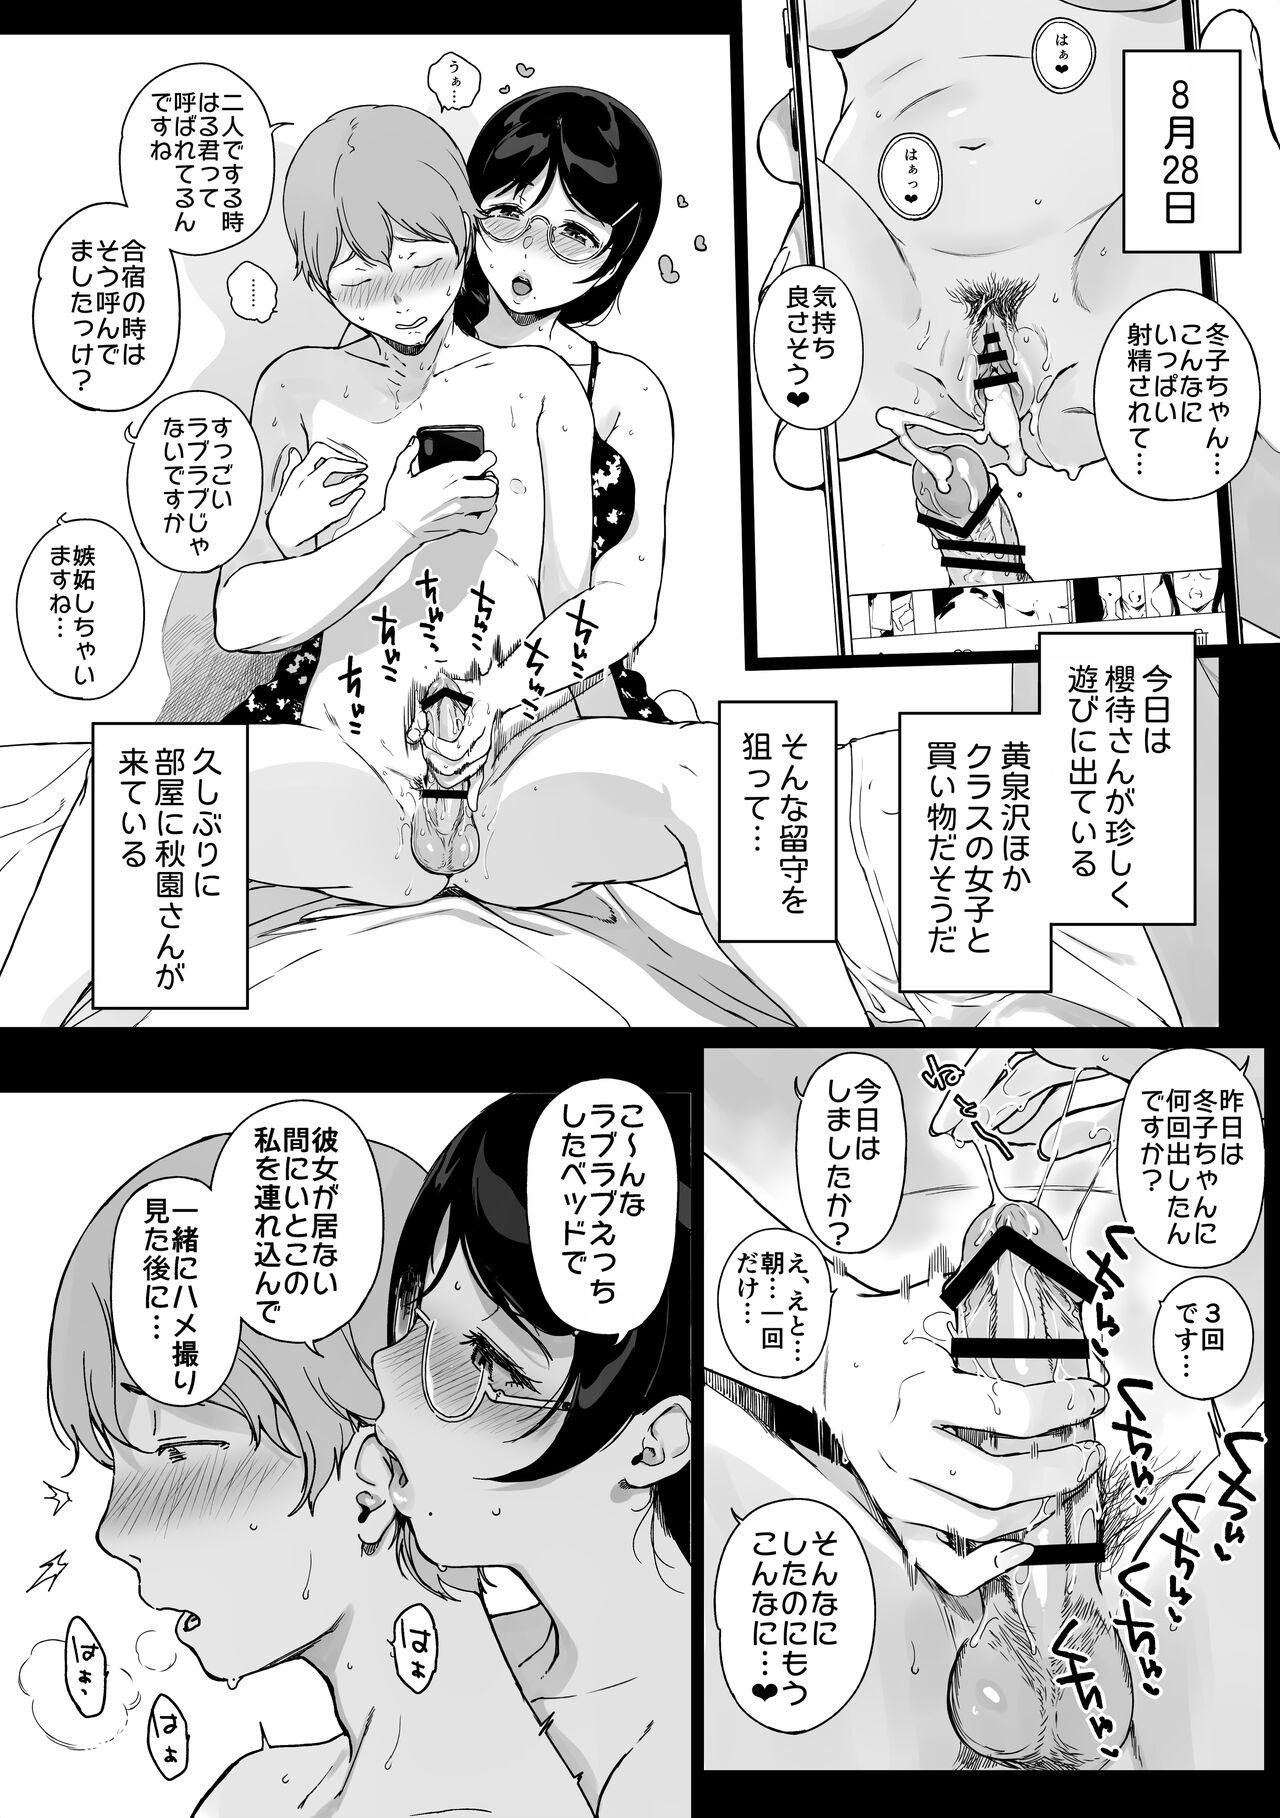 Upskirt サキュステ総集編Ⅲおまけ漫画 - Original Pain - Page 3